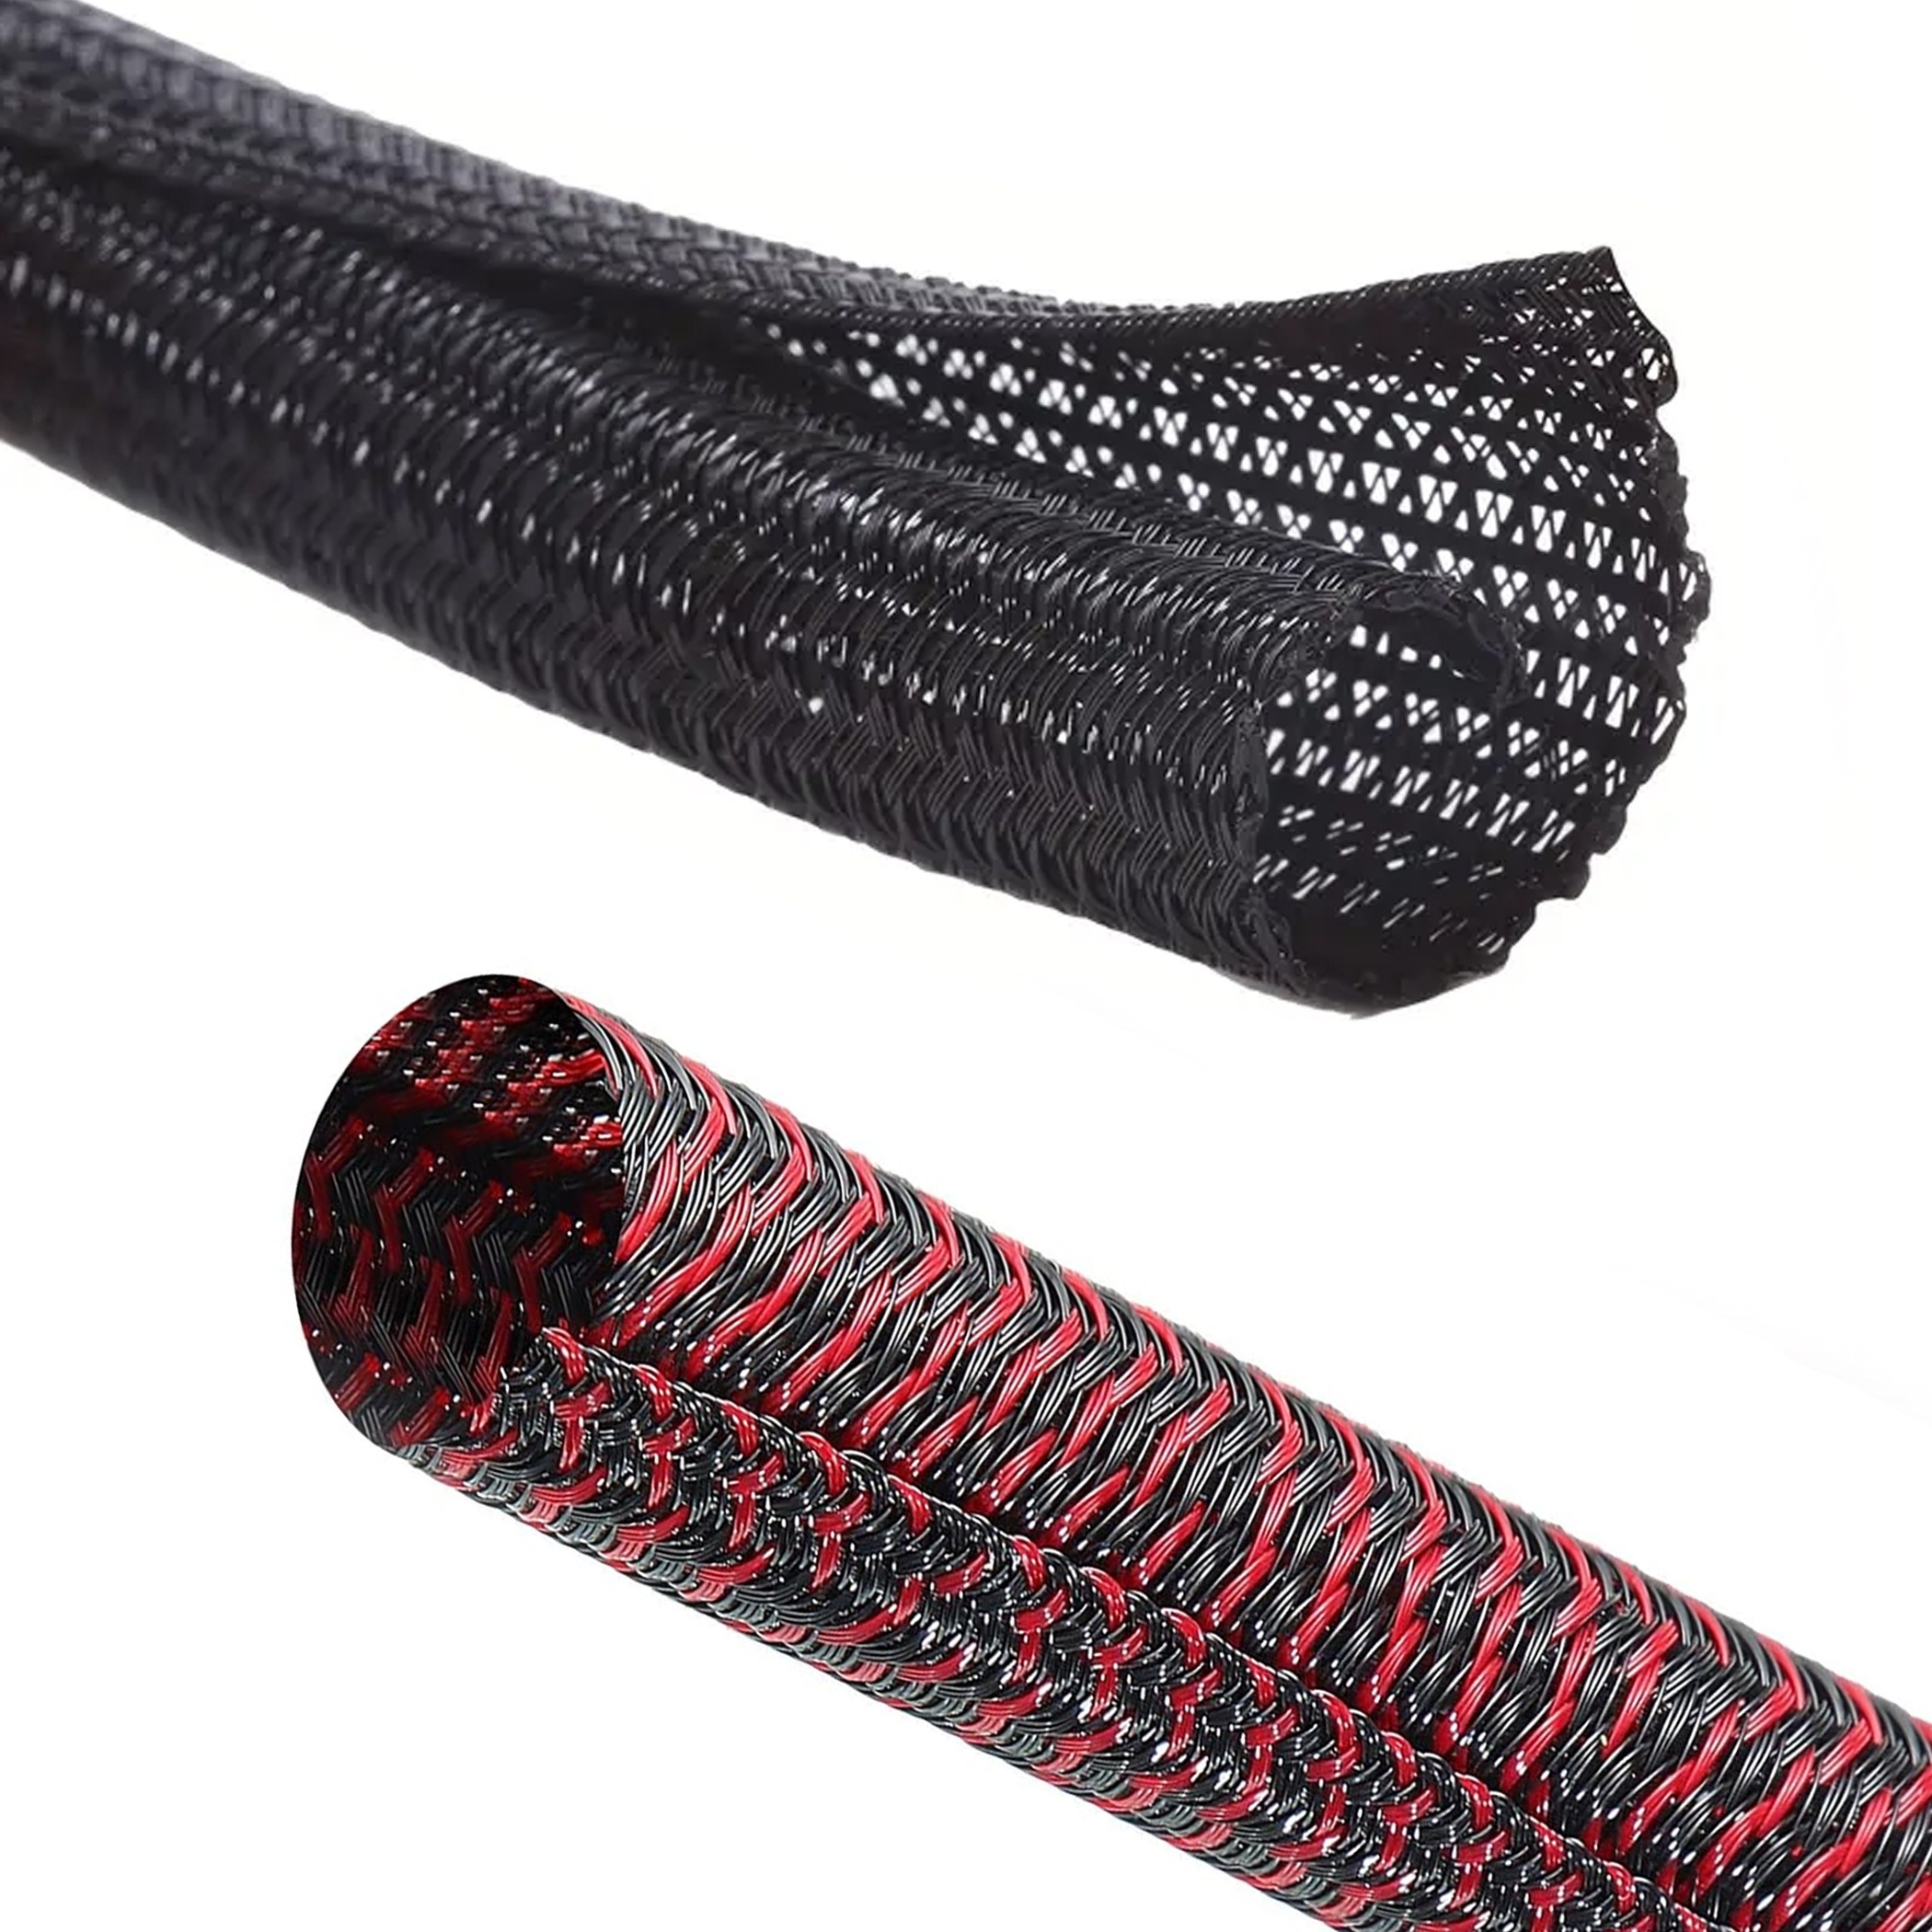 Woven Mesh Wire Loom — Split-Sleeve Wrap